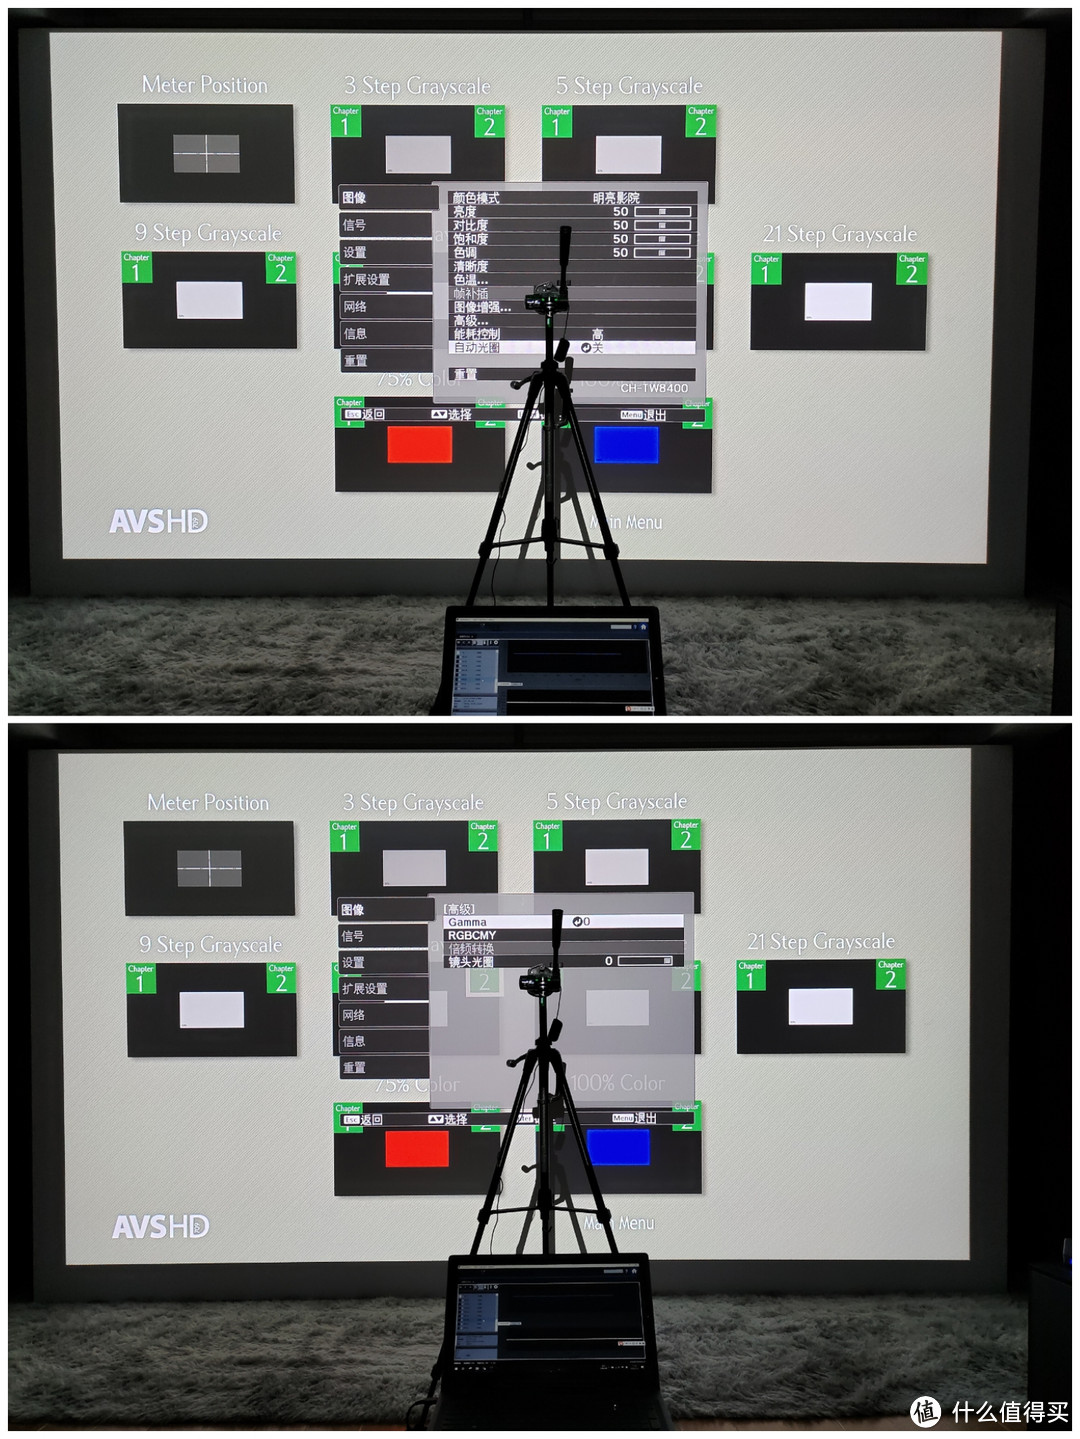 ▲将TW8400图像参数全部重置为出厂参数，关闭自动光圈避免影响实测值